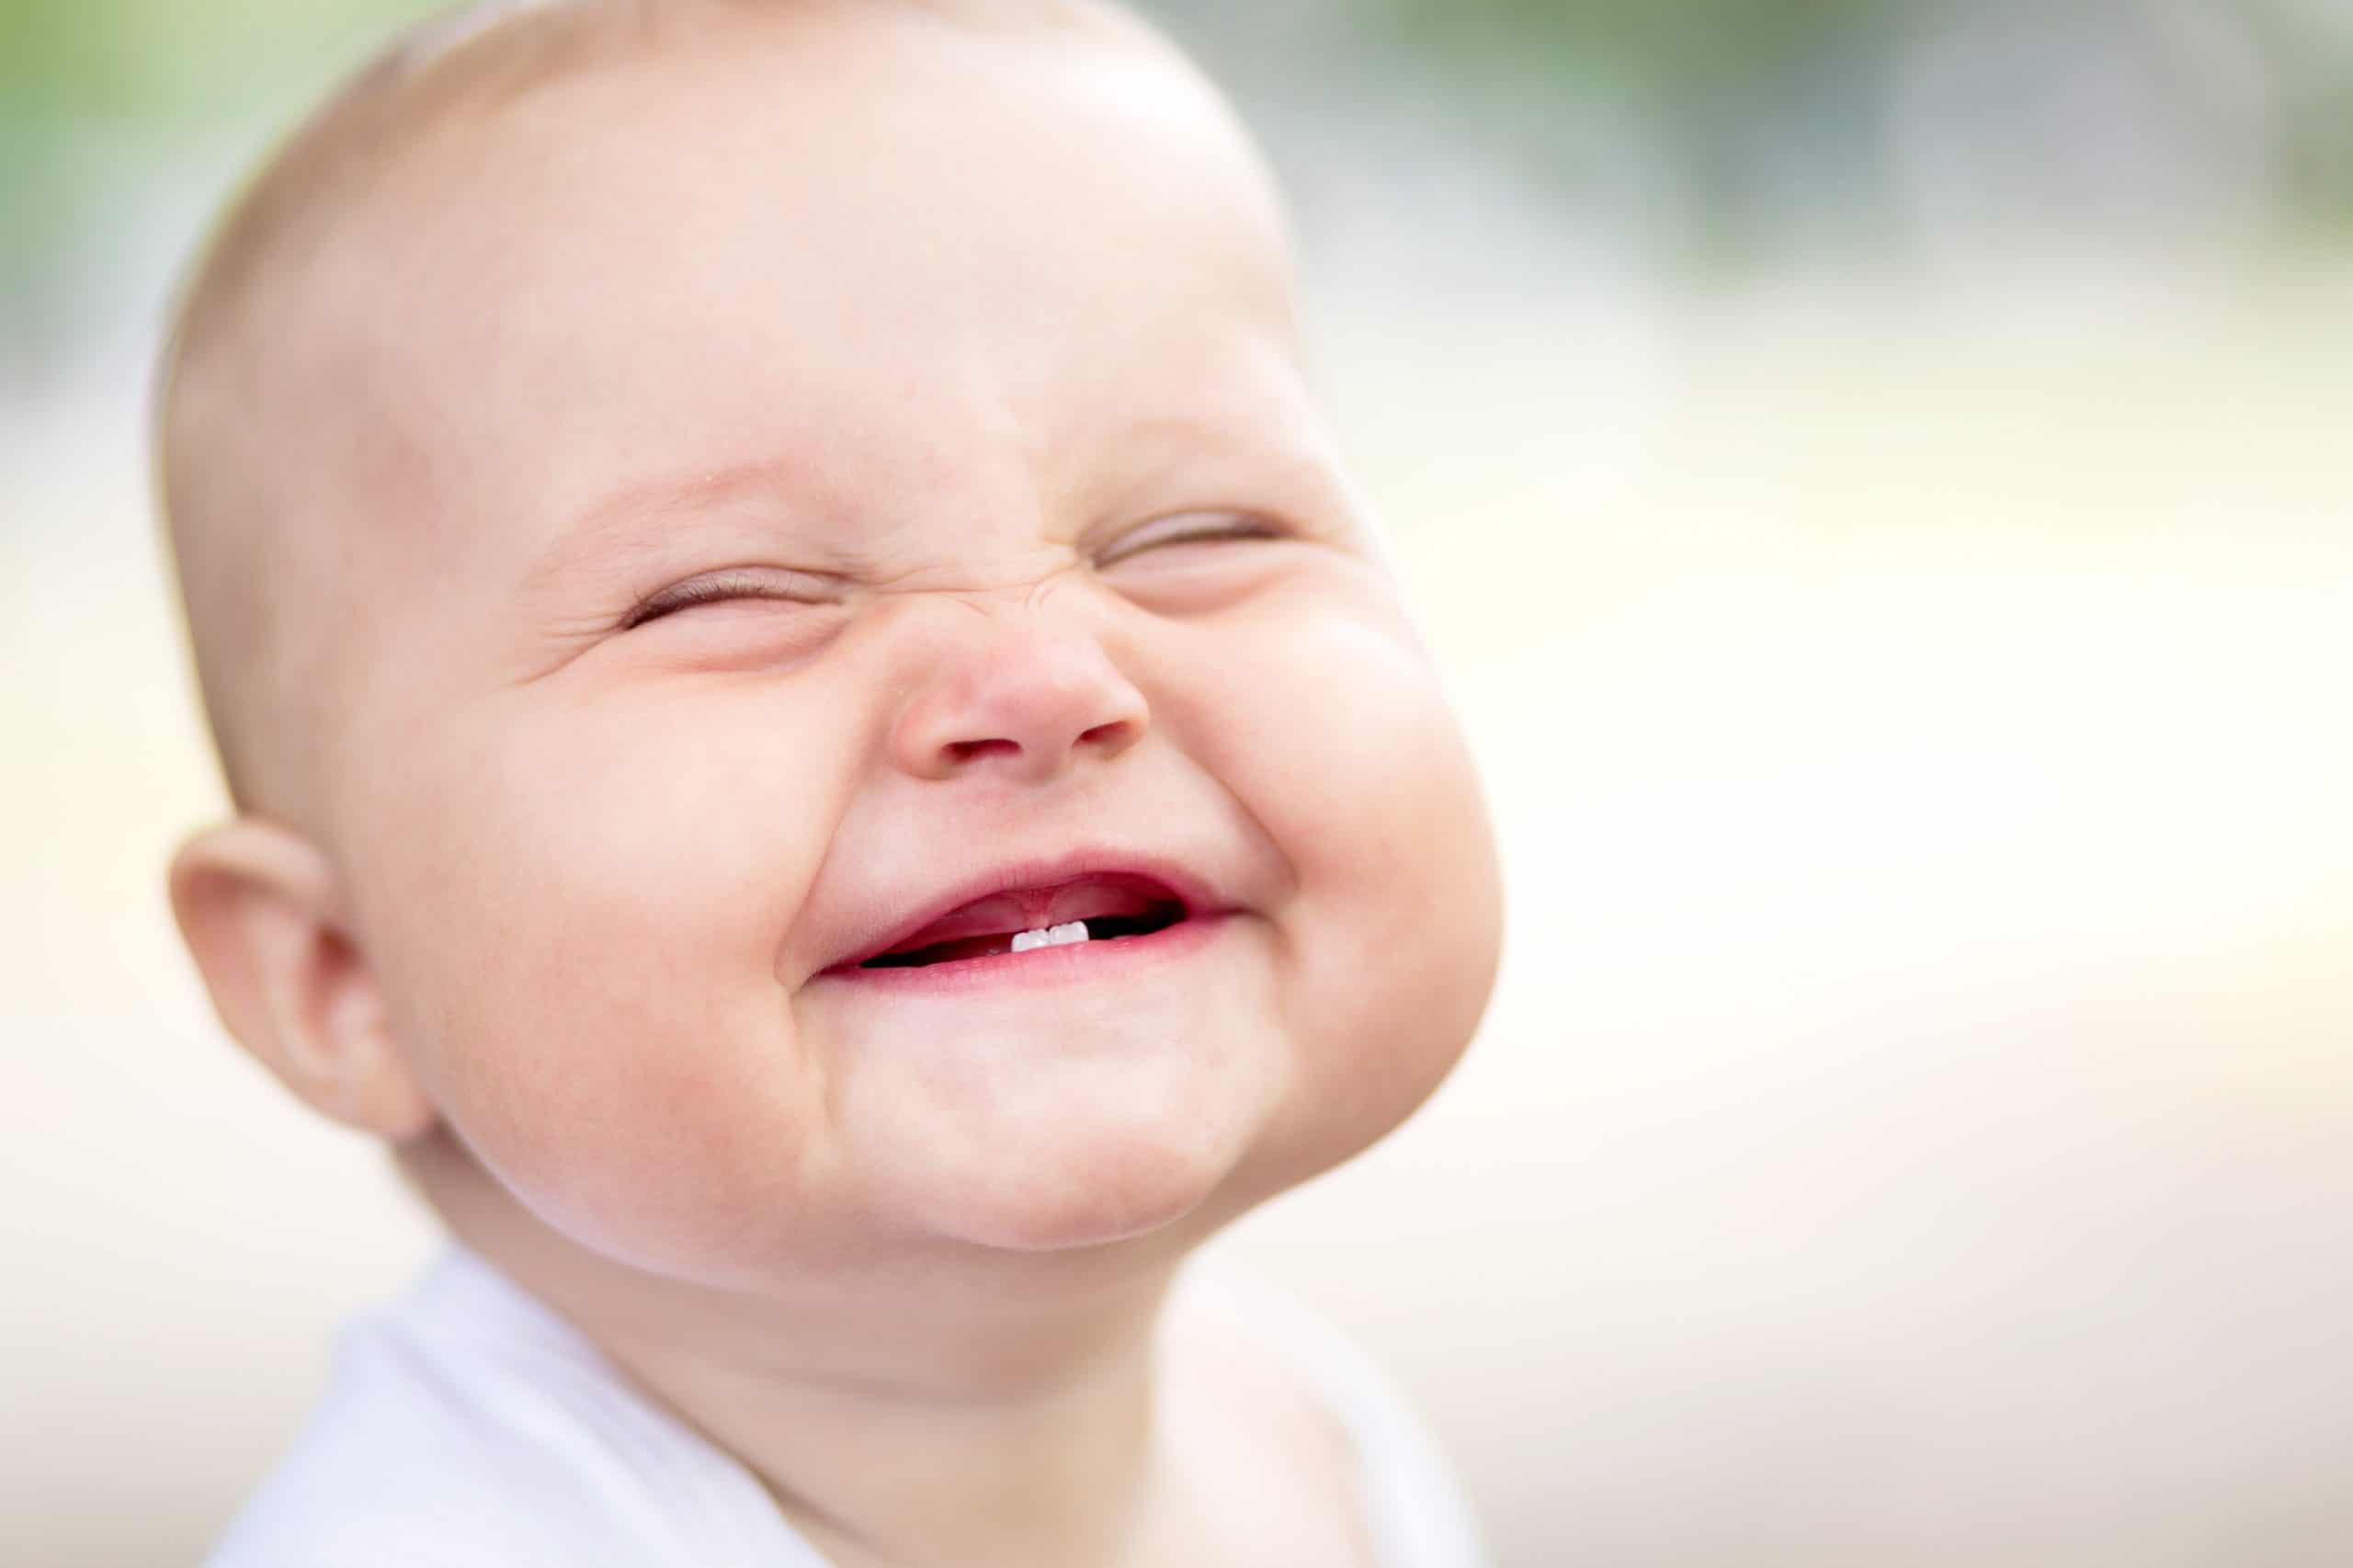 when do babies smile